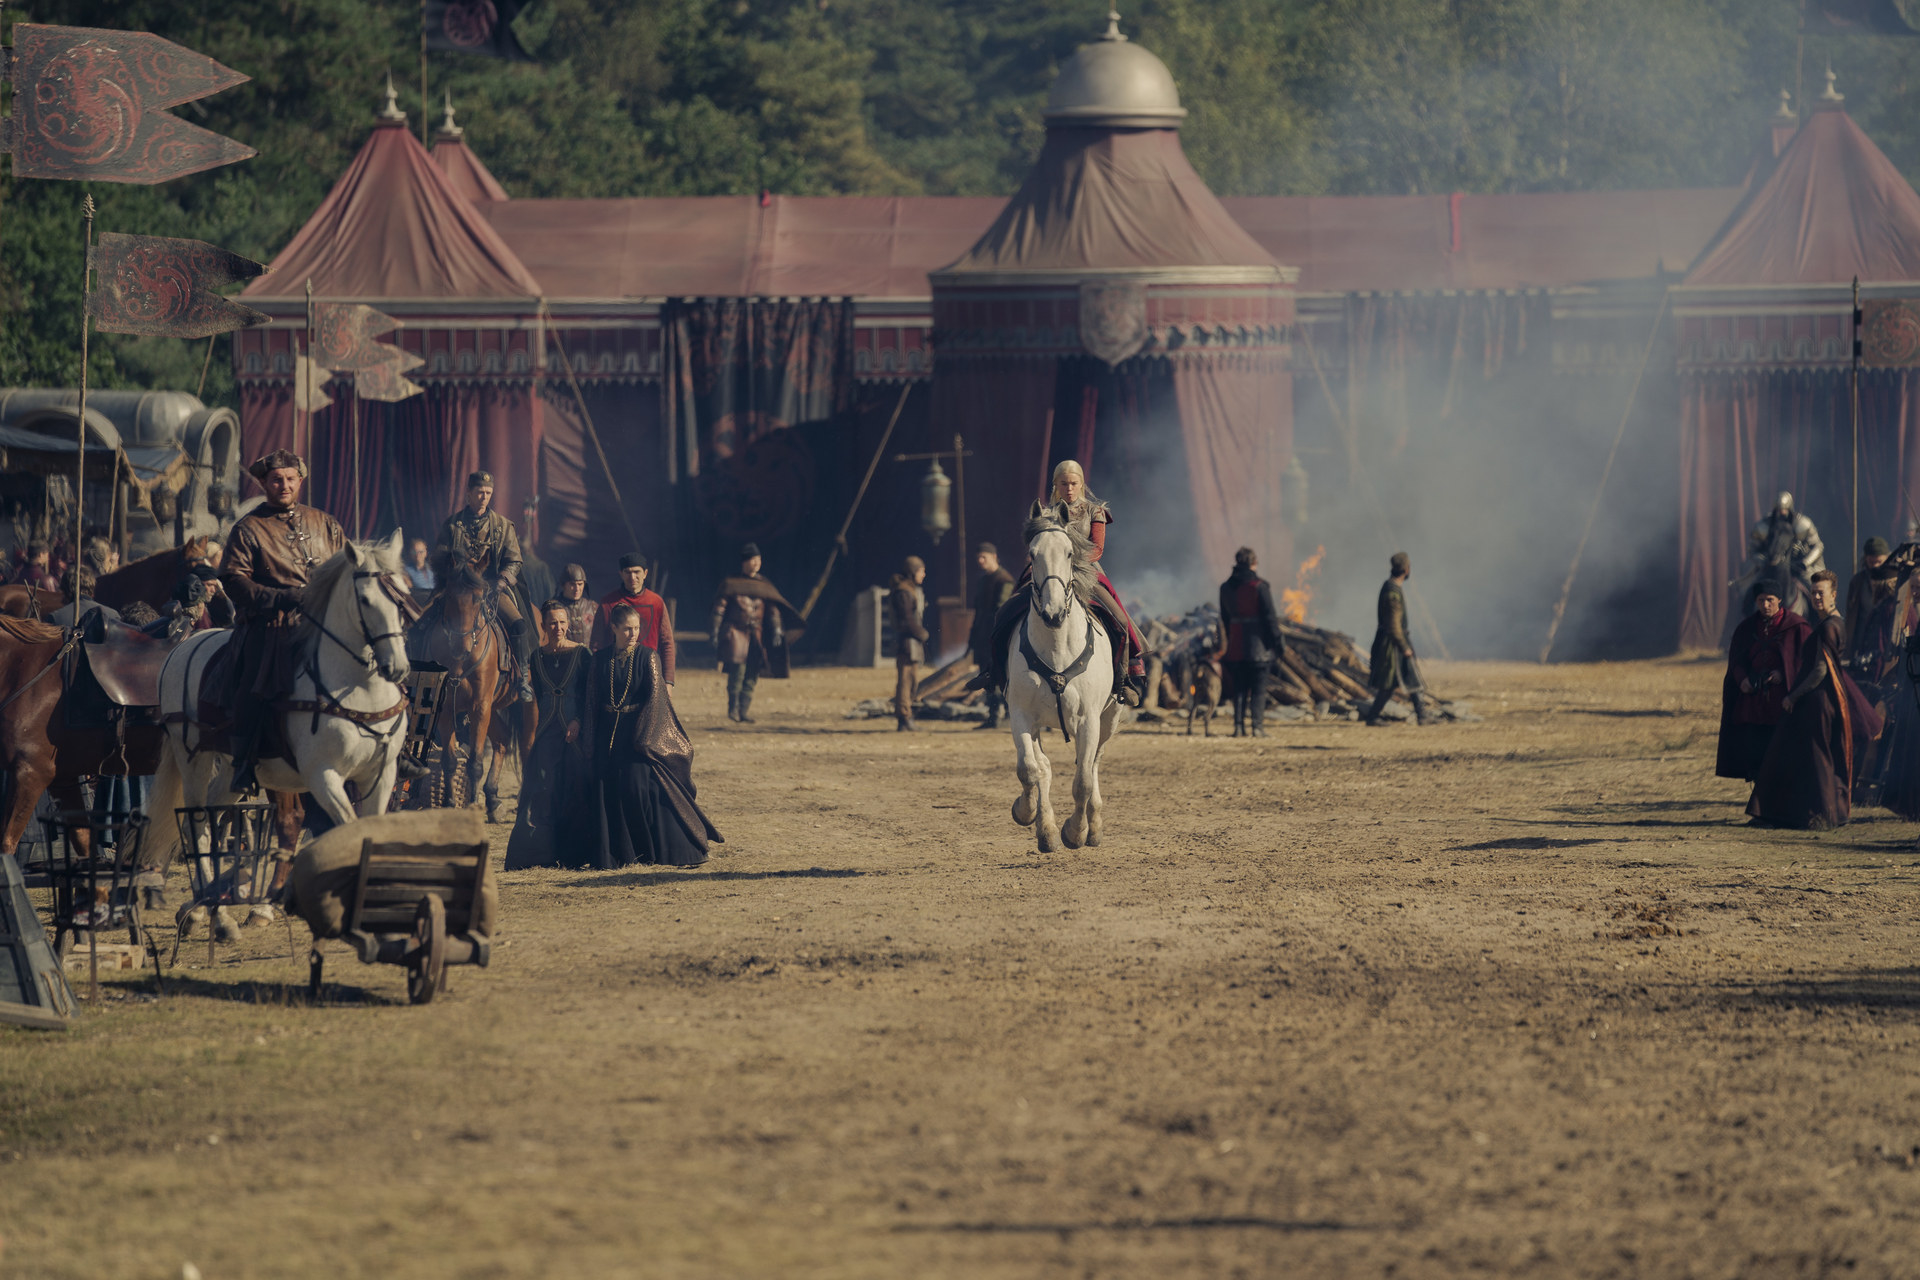 Rhaenyra rides her horse through the royal camp